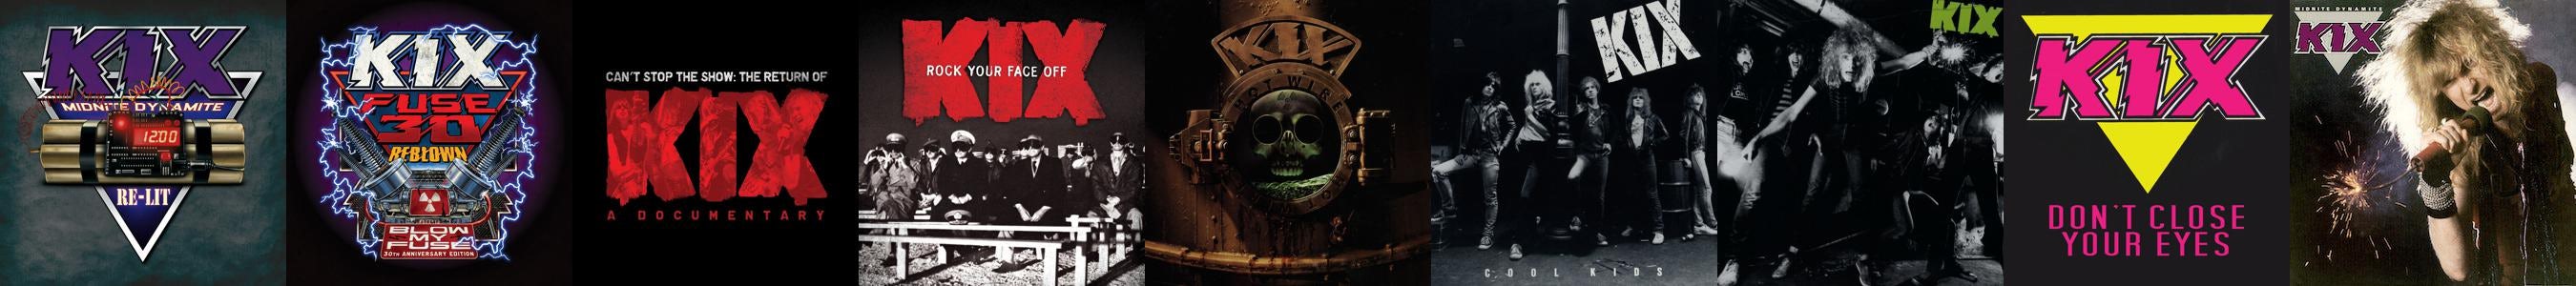 Kix Rock Your Face Off Album Cover T-Shirt Black